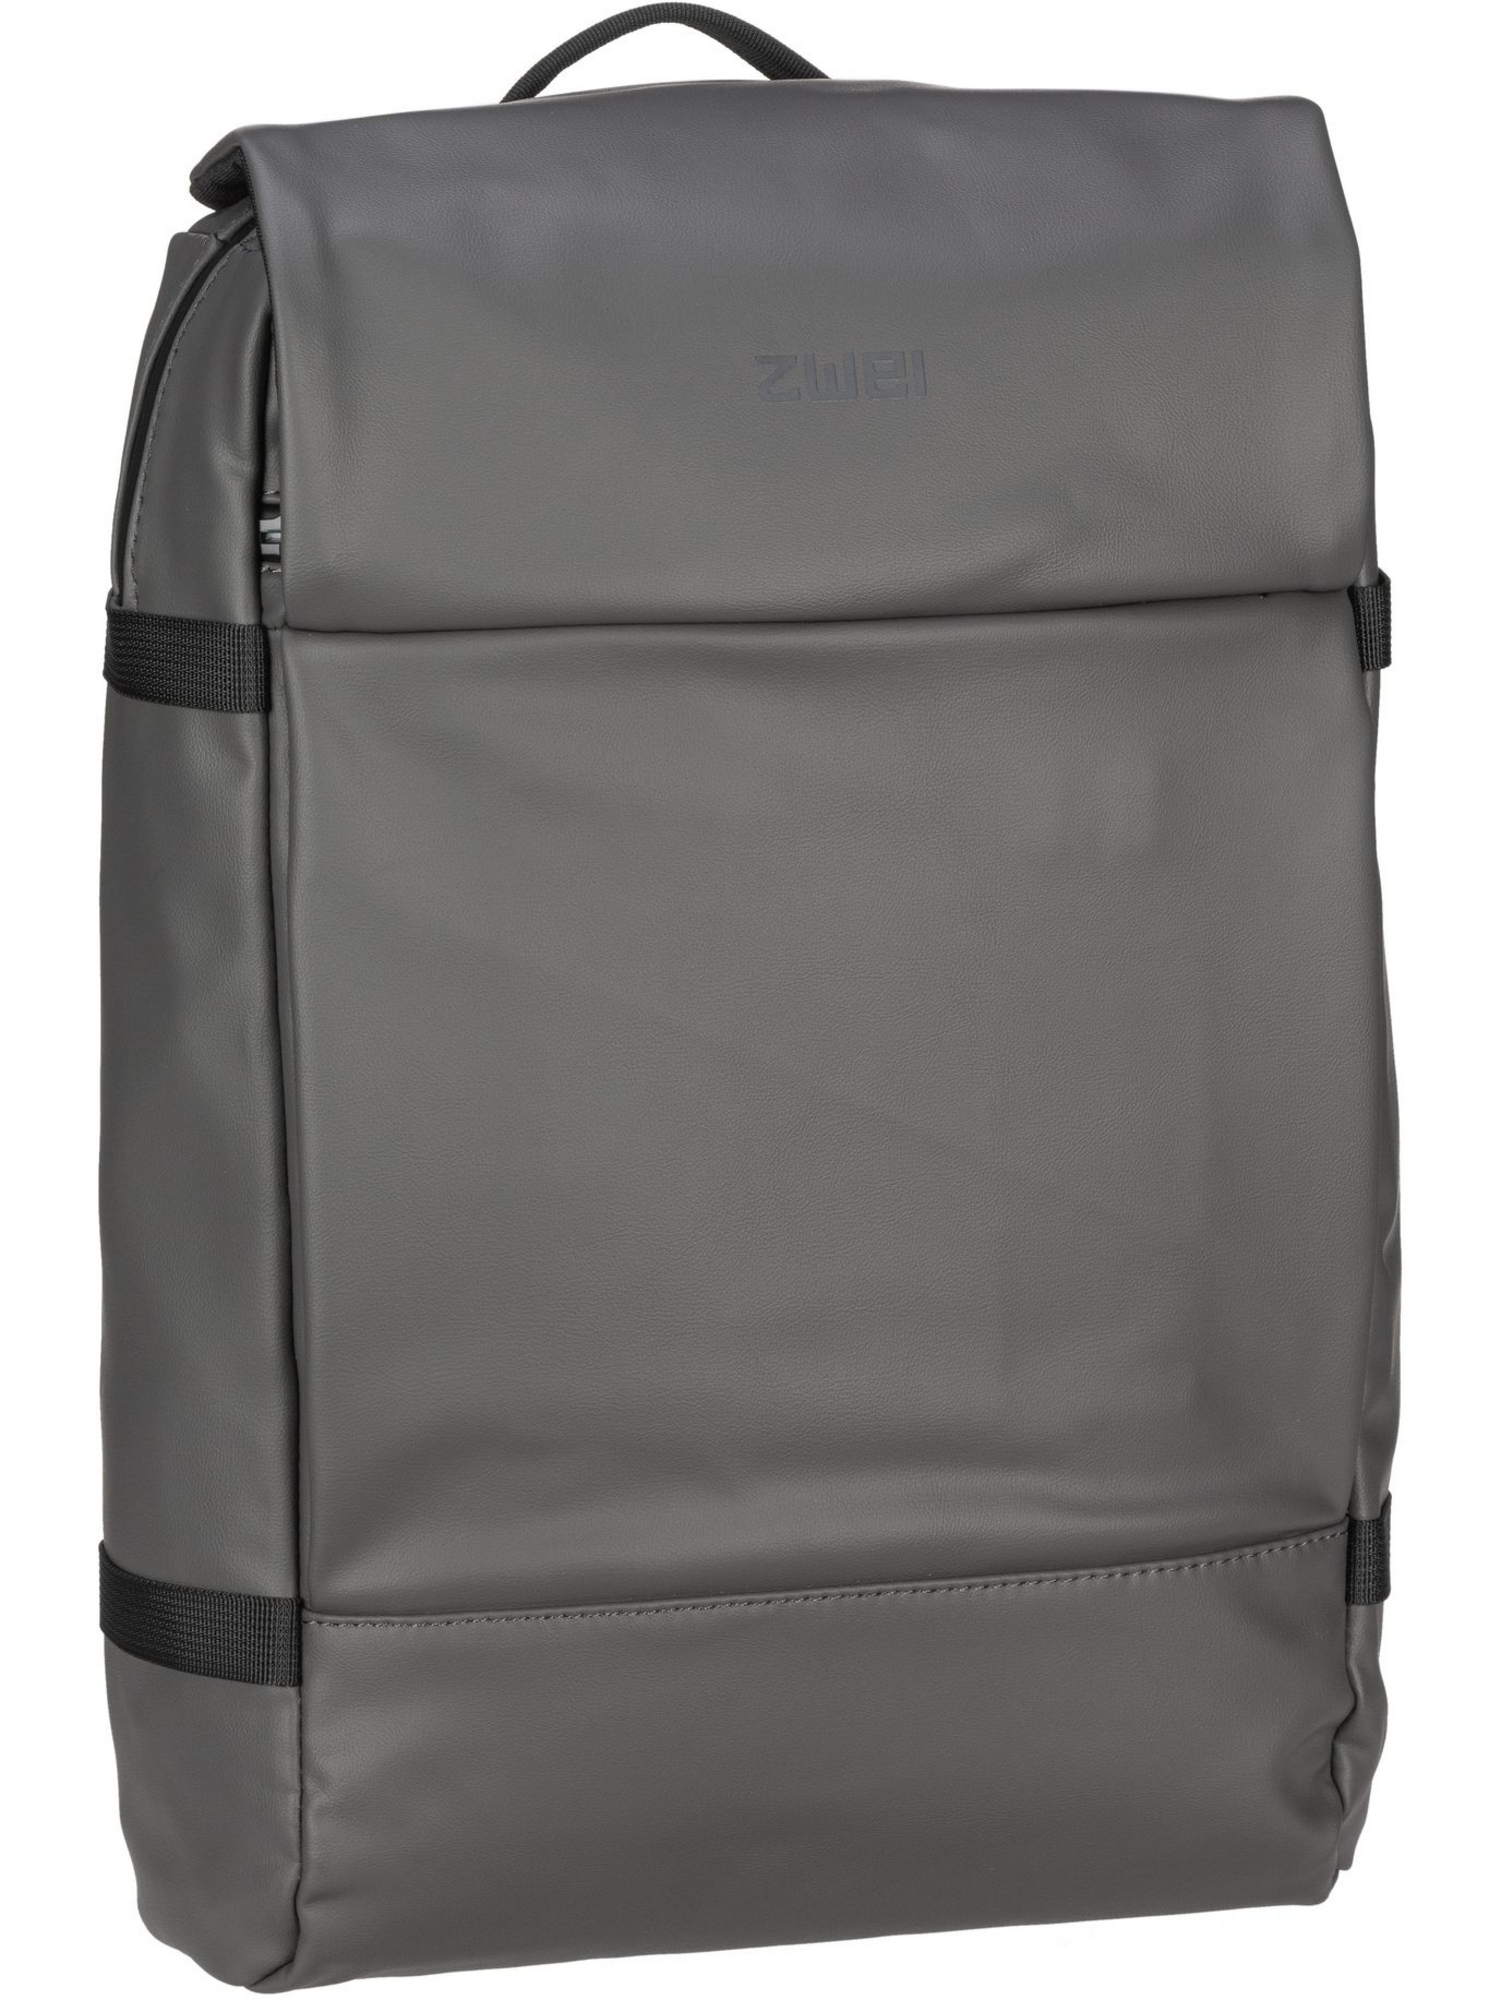 Рюкзак Zwei/Backpack Aqua AQR150, серый